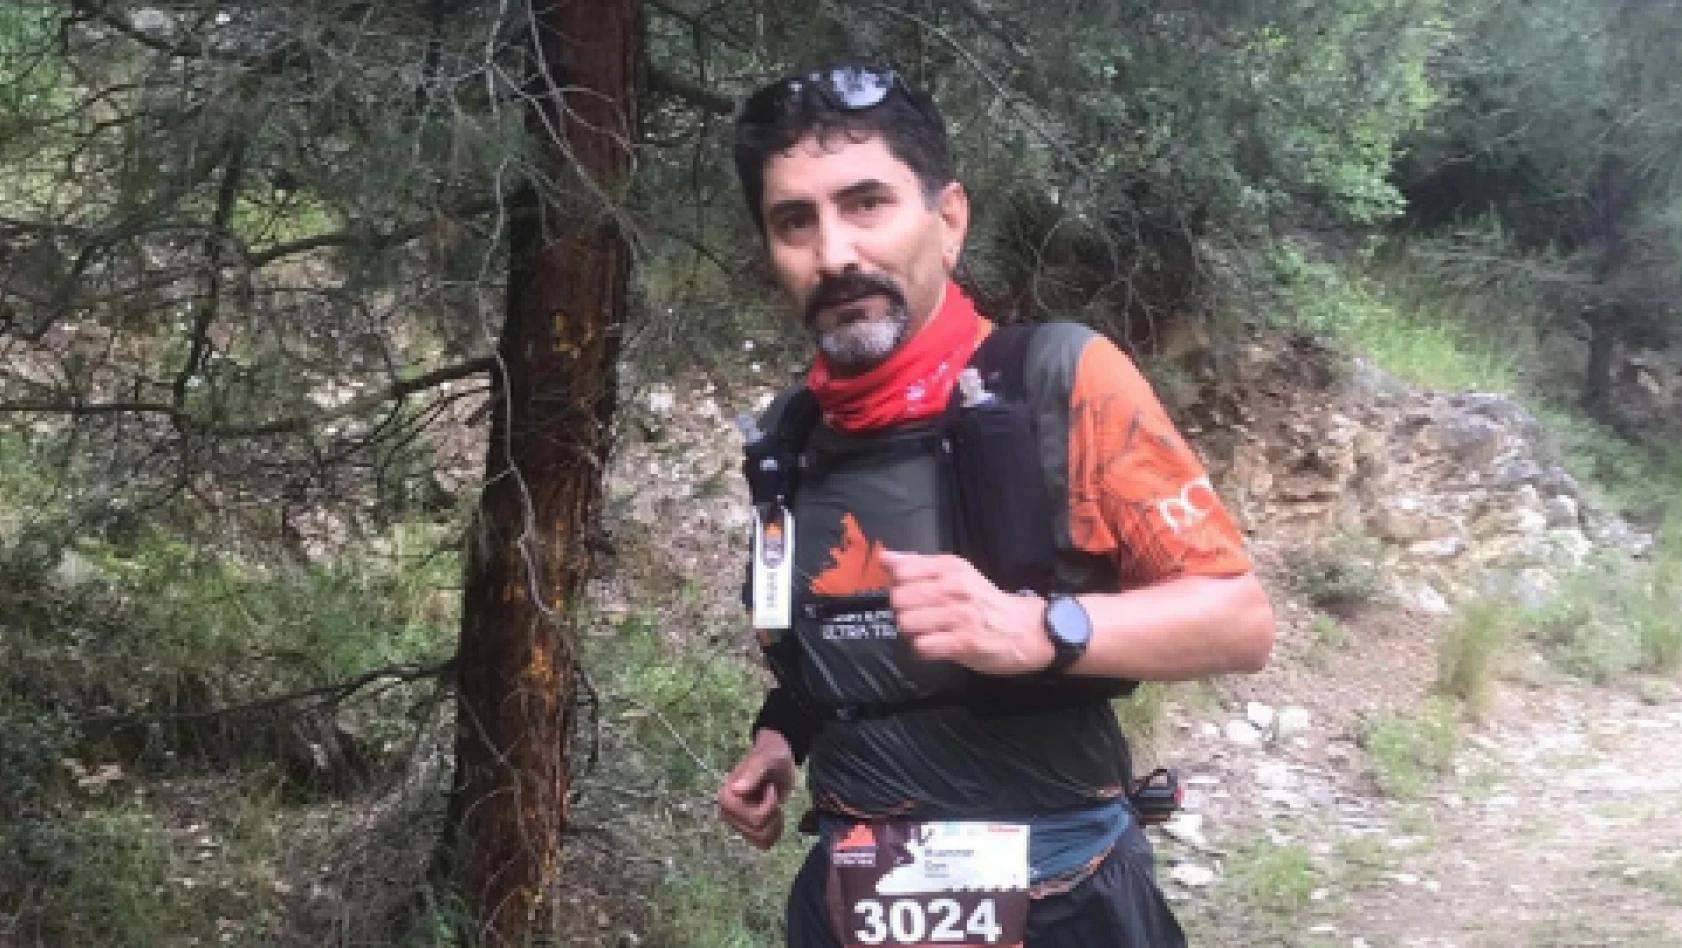  Erciyes Dağ Maratonuna katılan astsubay hayatını kaybetti